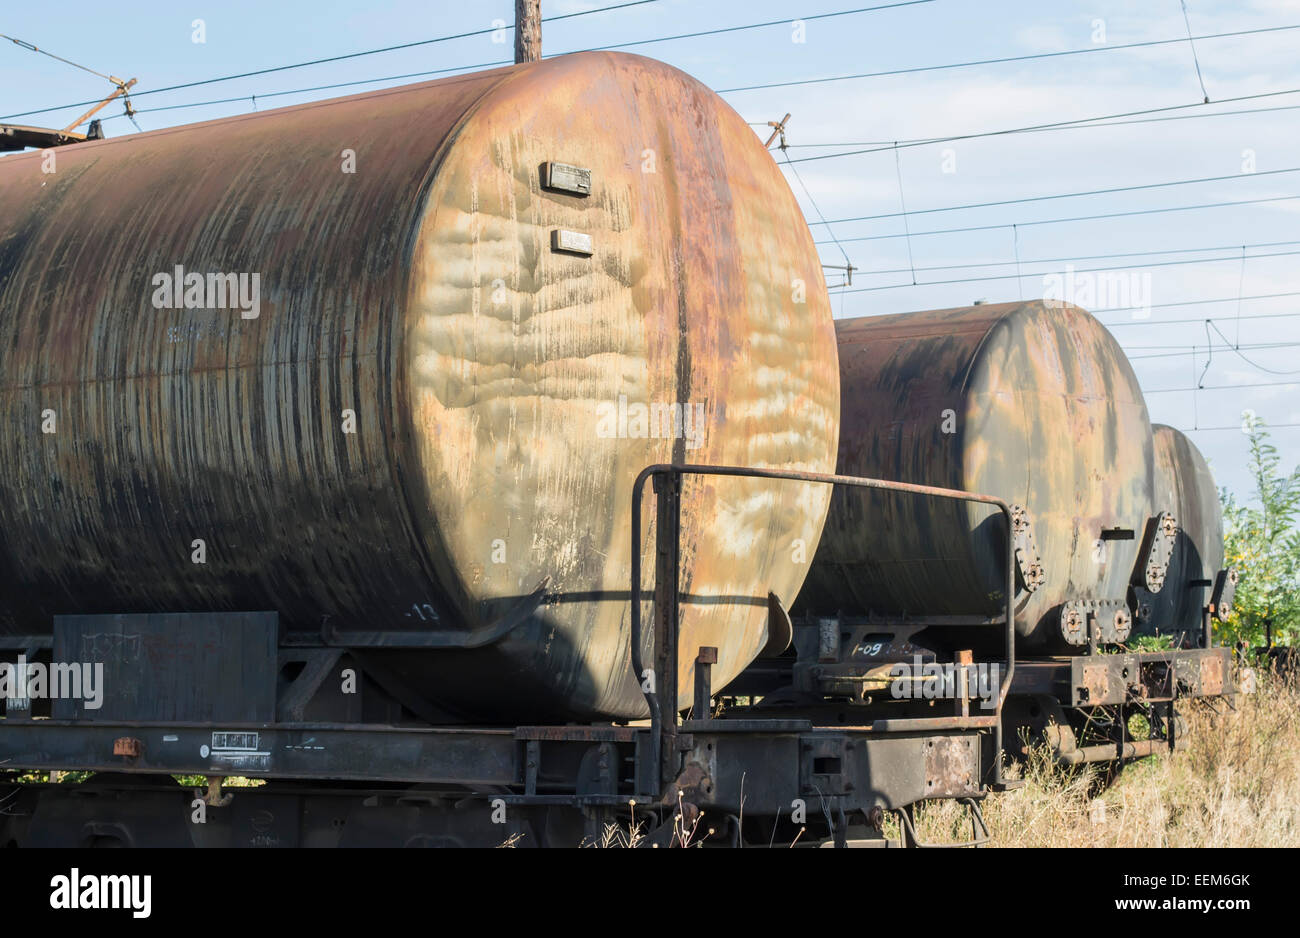 Rangées de wagons de fret, abandonnés sur les voies ferrées d'une ancienne plate-forme industrielle Banque D'Images